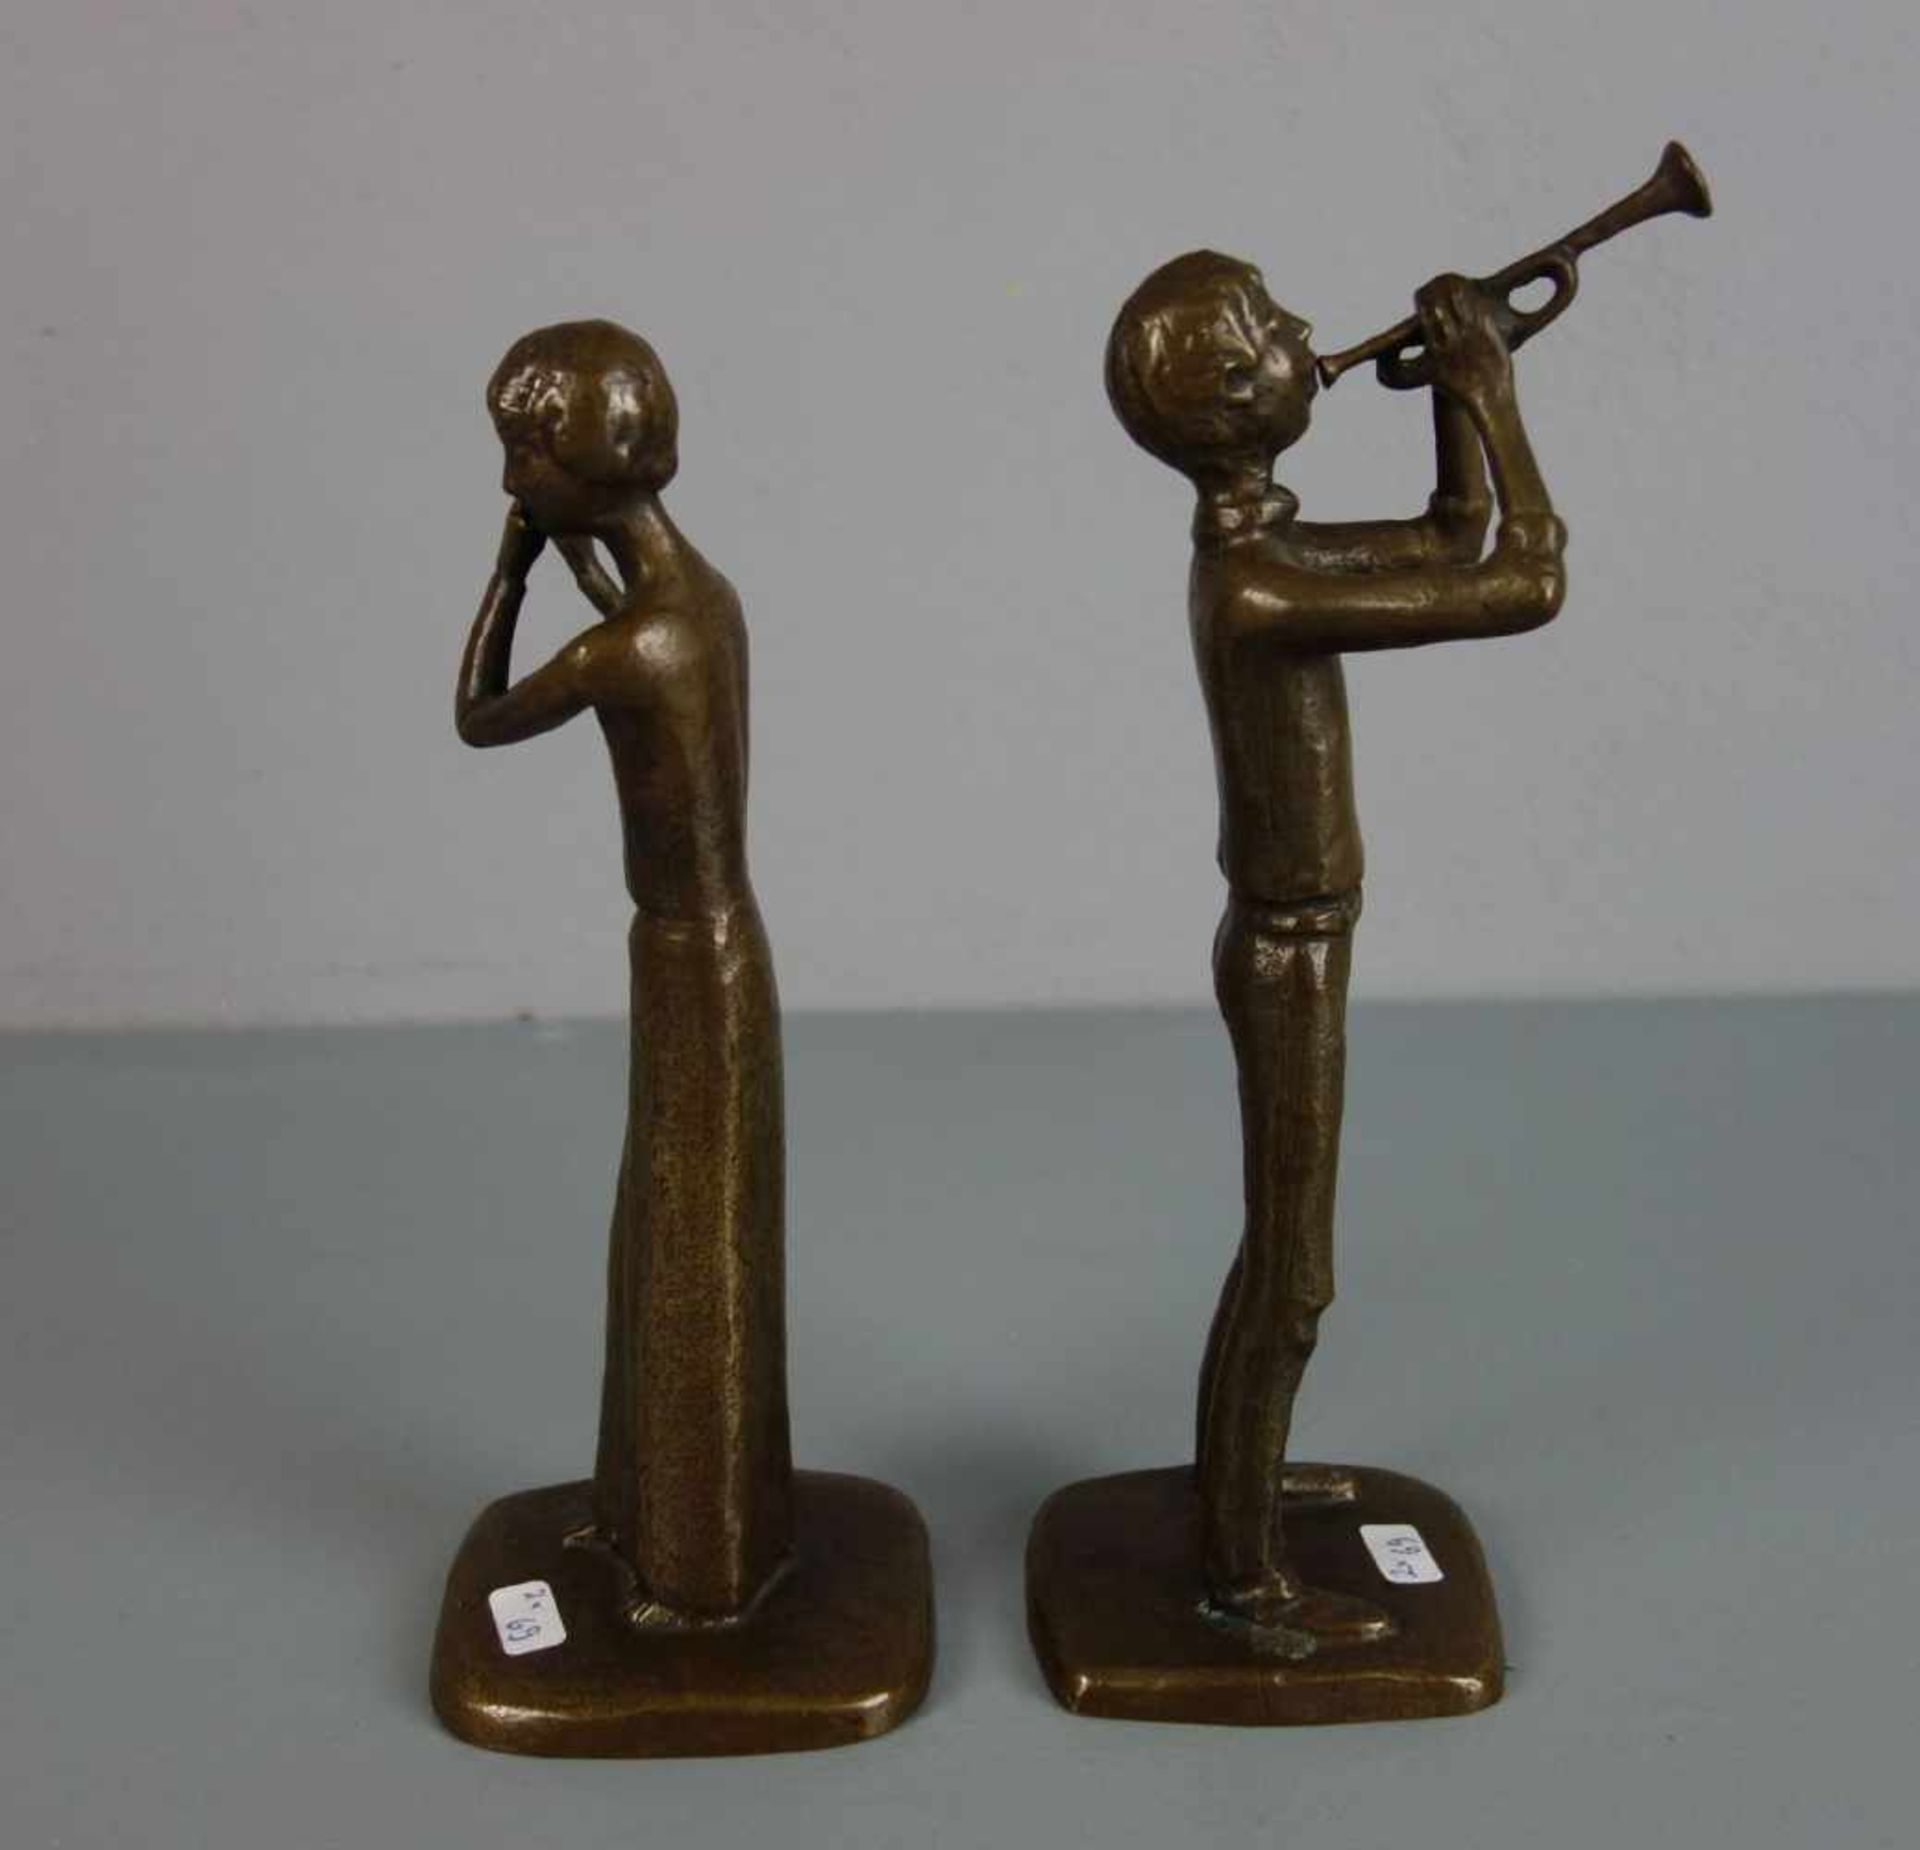 ANONYMER BILDHAUER (20. / 21. JH.), Paar Bronze - Skulpturen: "Trompeter" und "Flötistin" / - Image 4 of 4